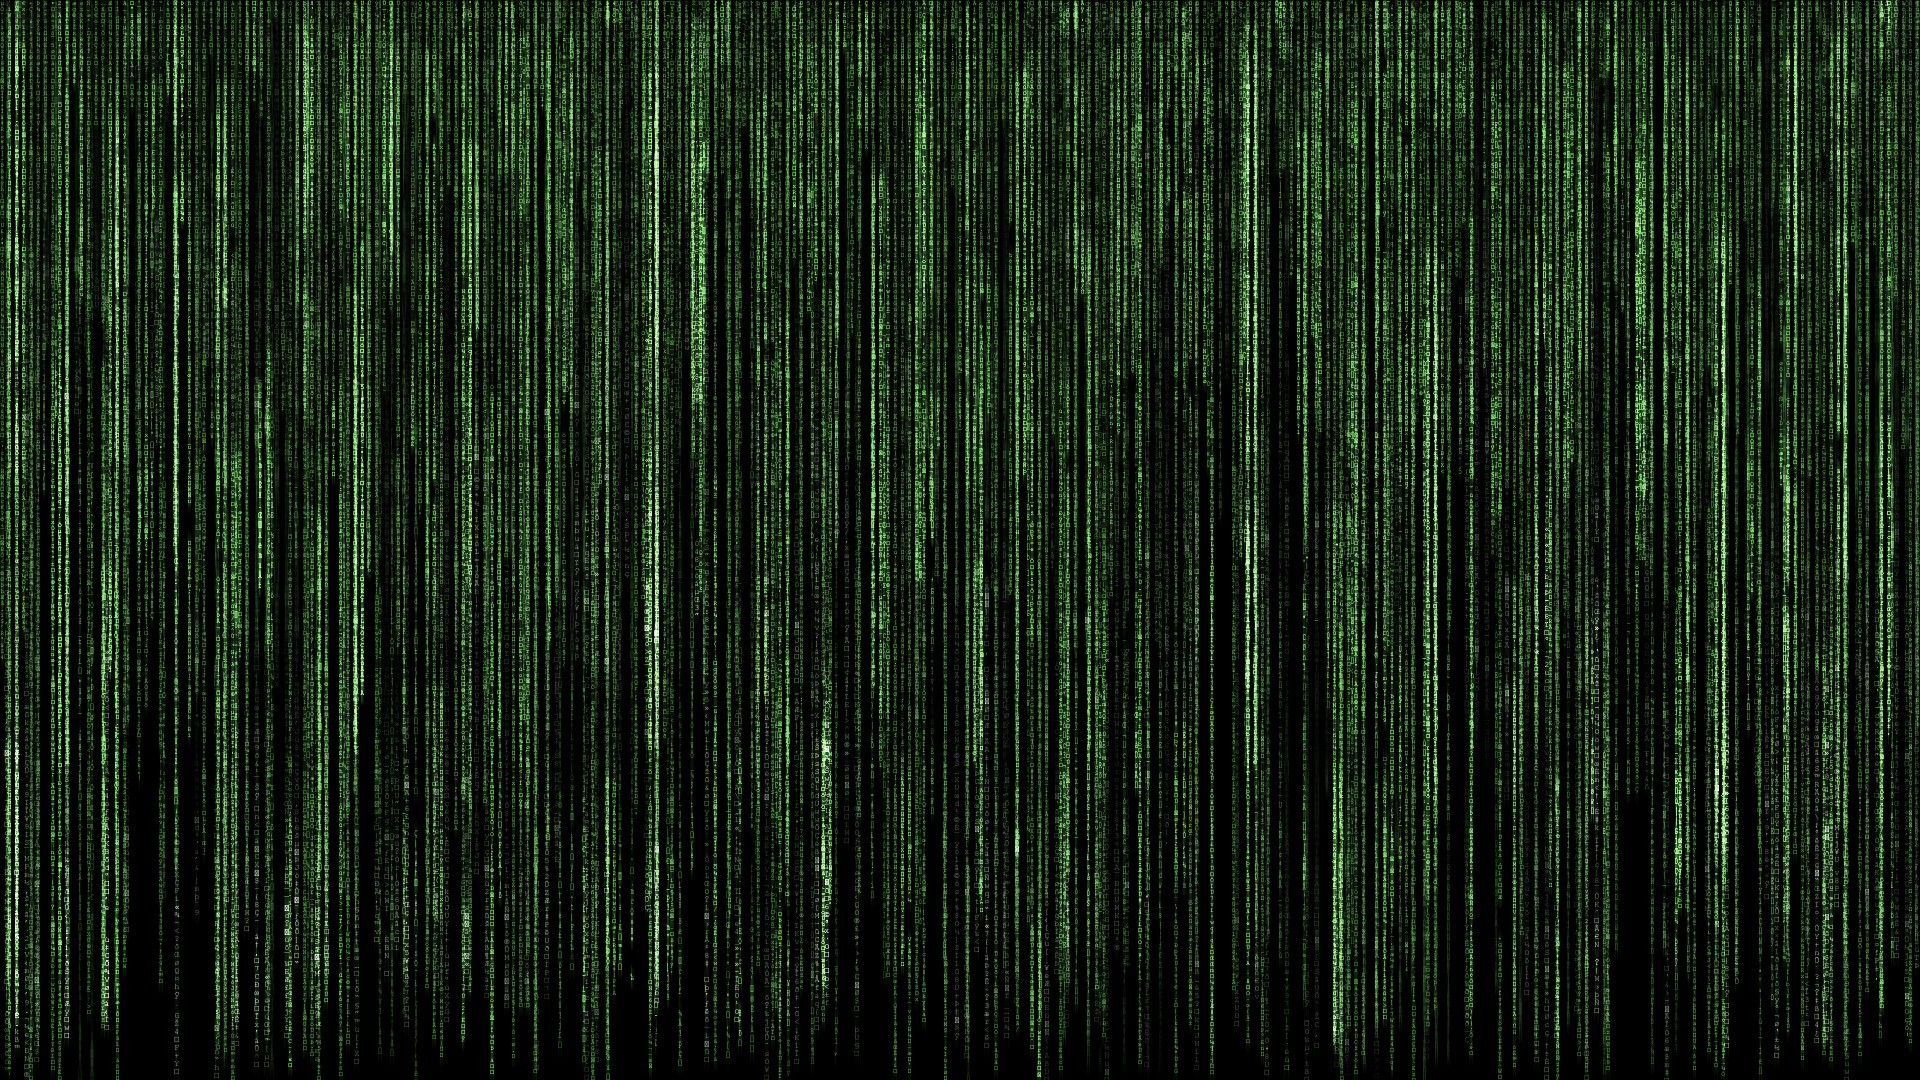 digital Art, The Matrix, Code Wallpaper